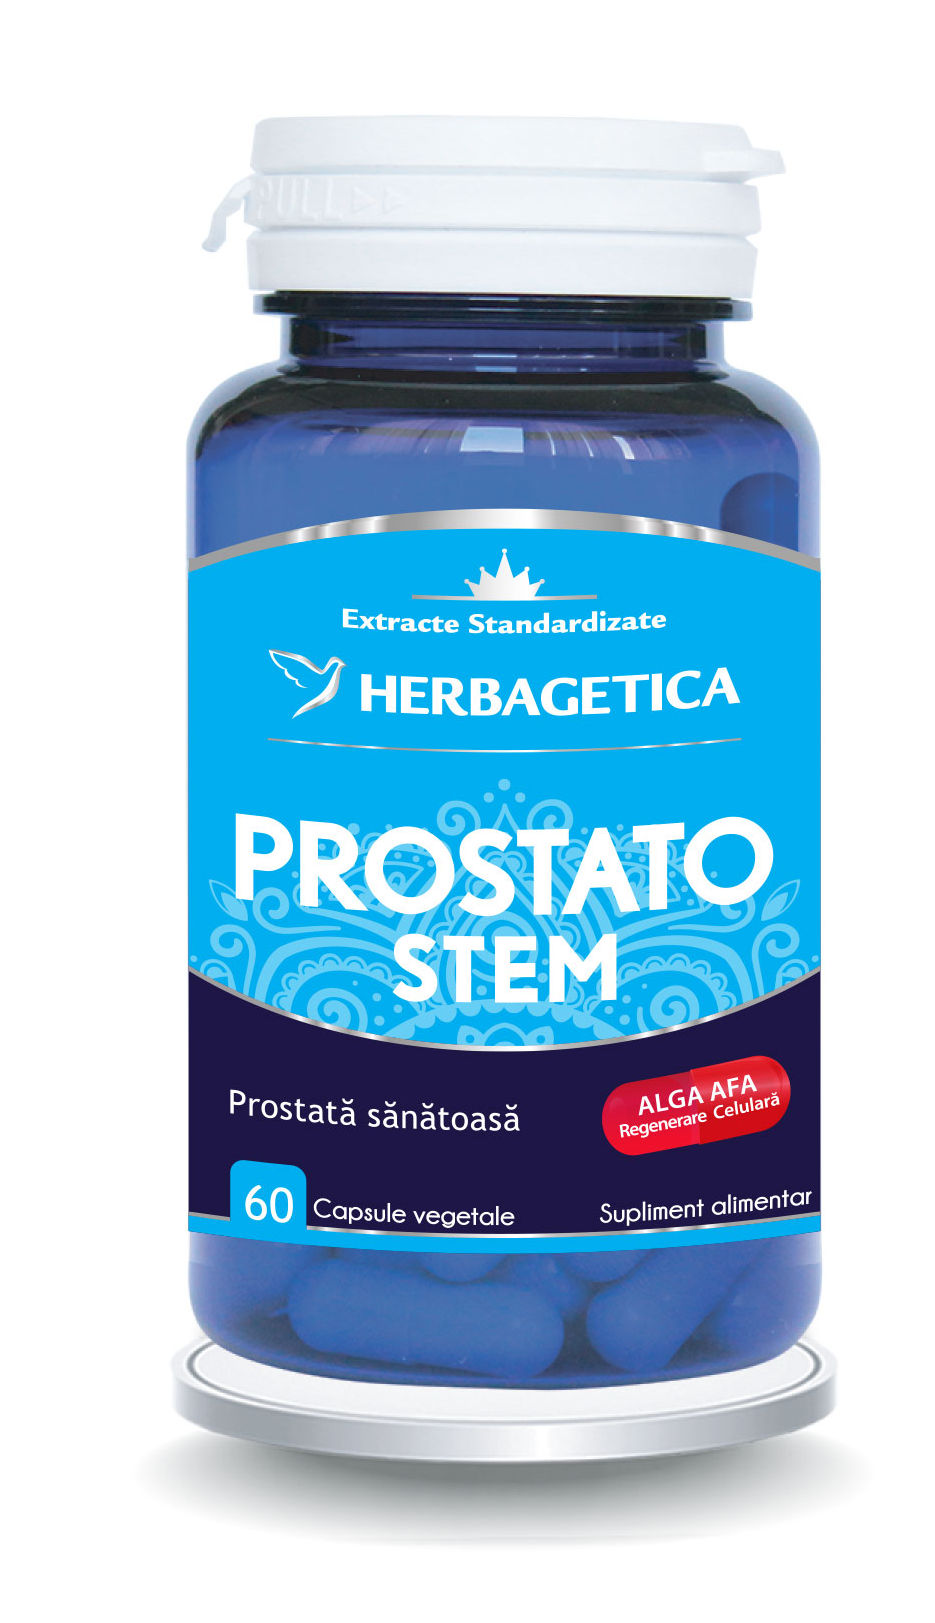 Prostato stem